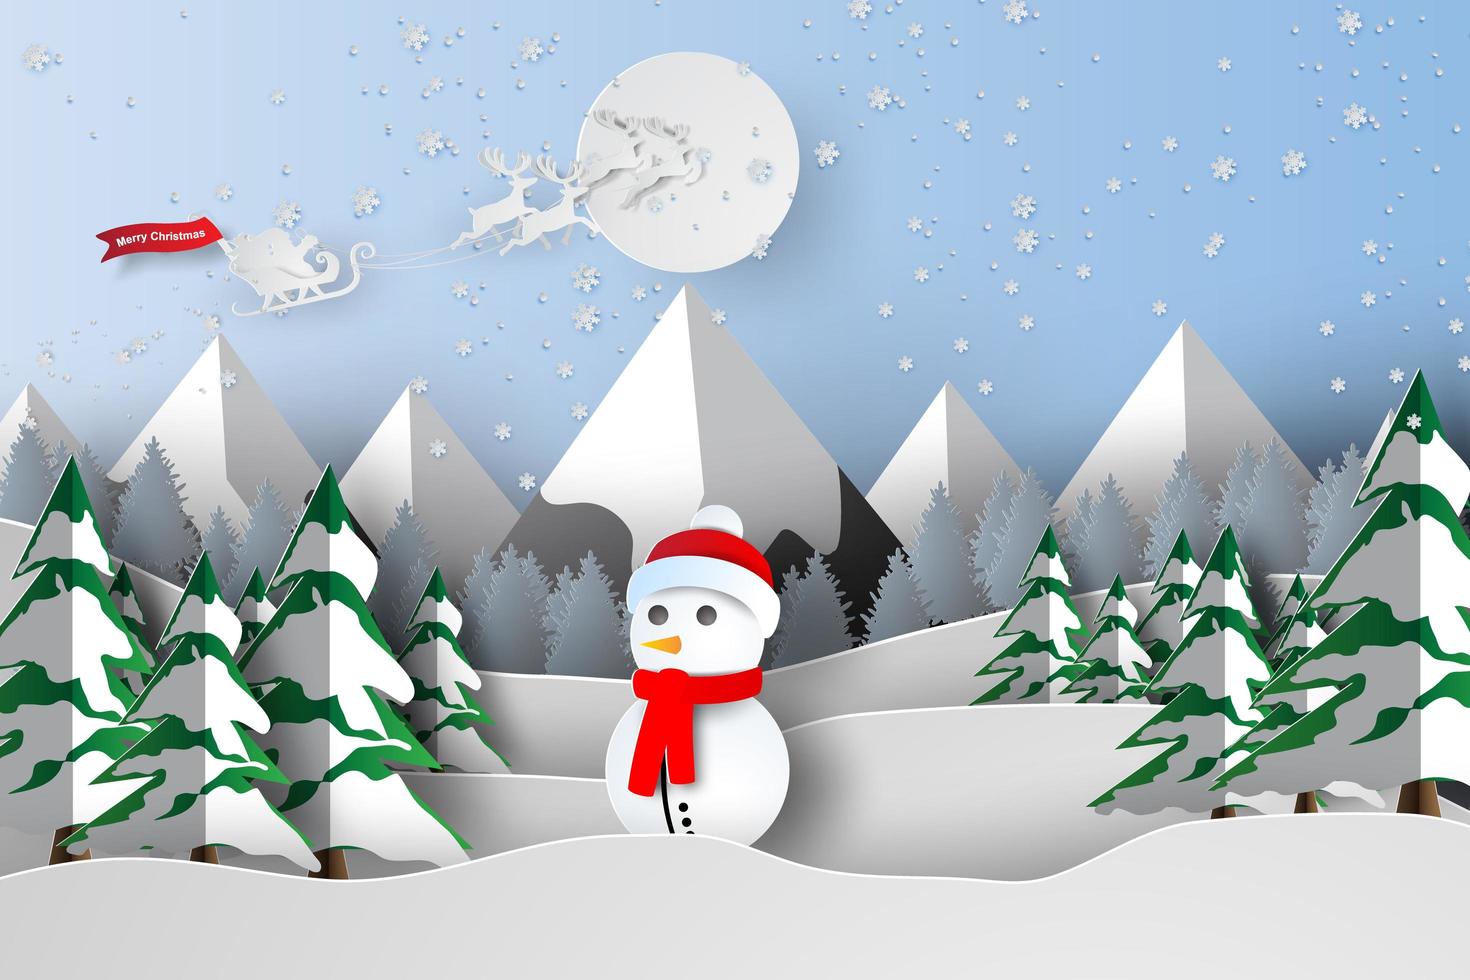 papierkunst van vrolijk kerstfeest met sneeuwpop vector